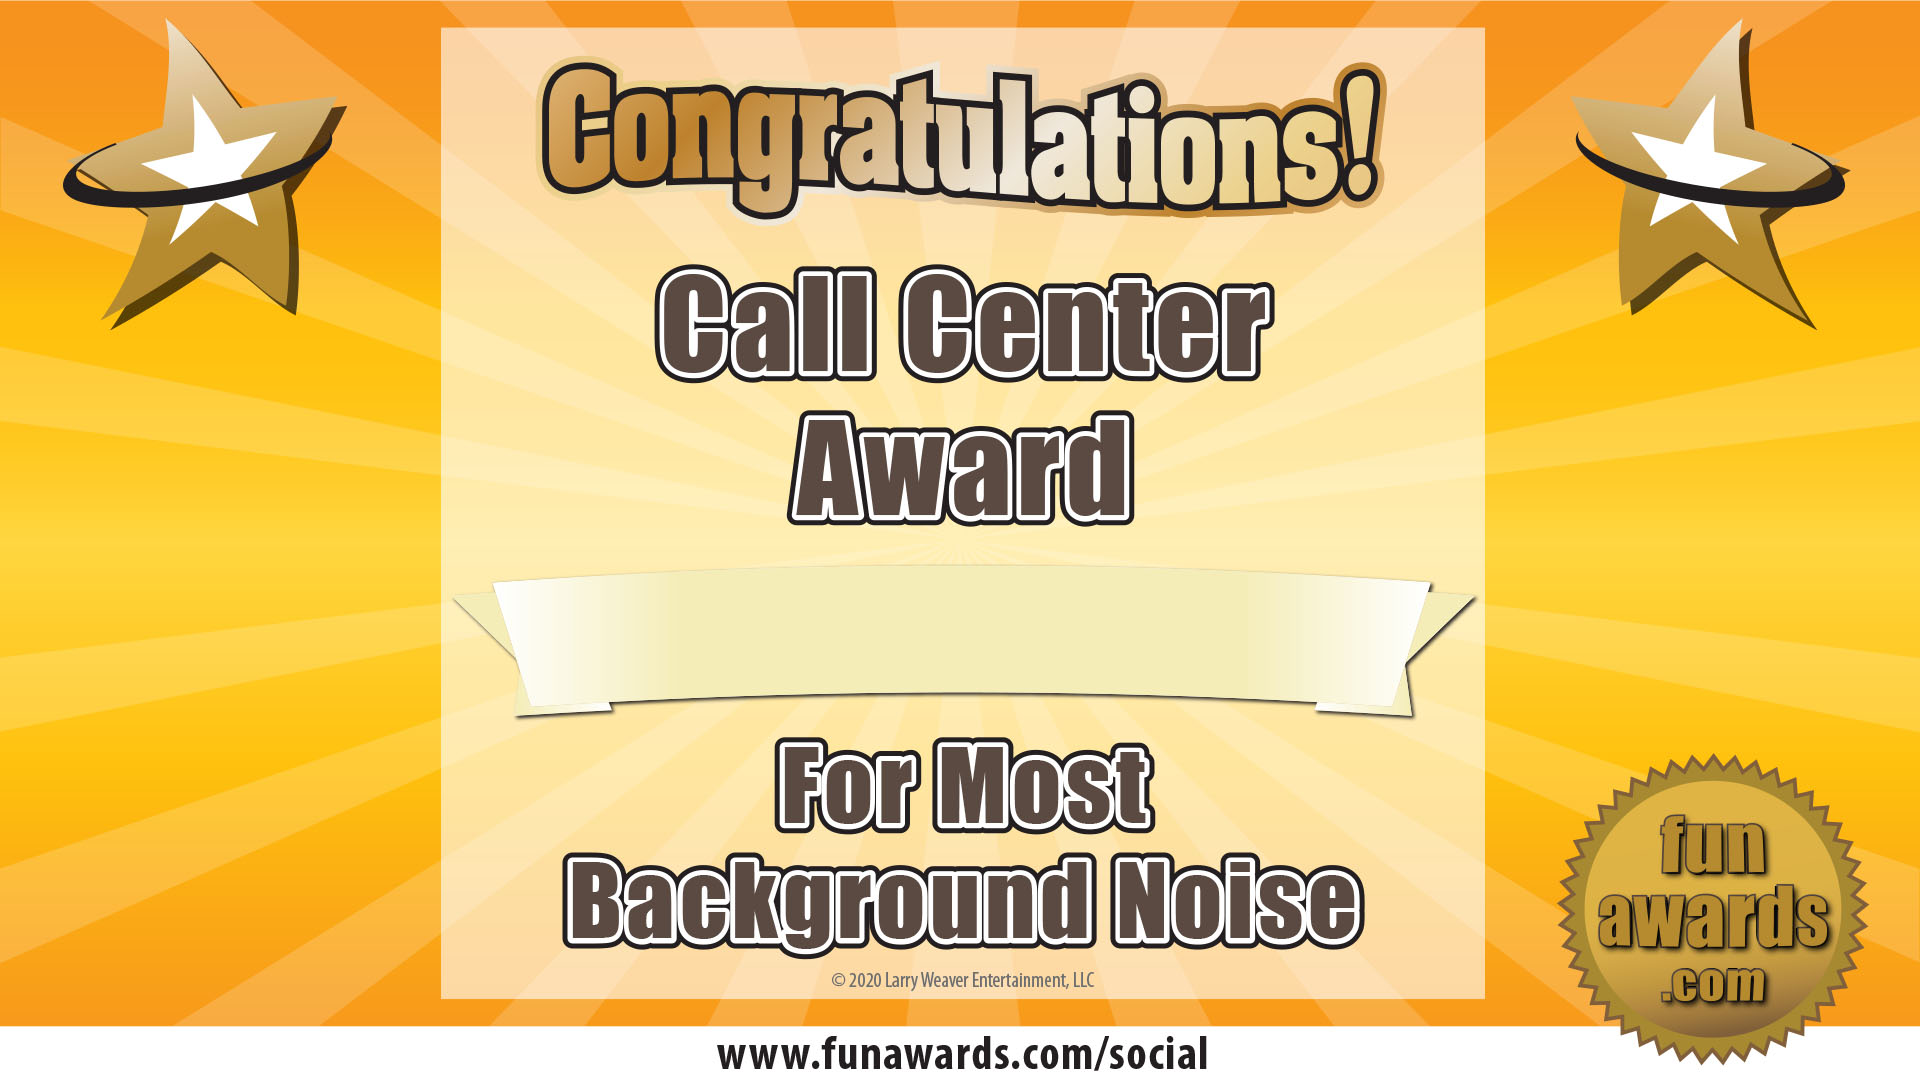 Call Center Award